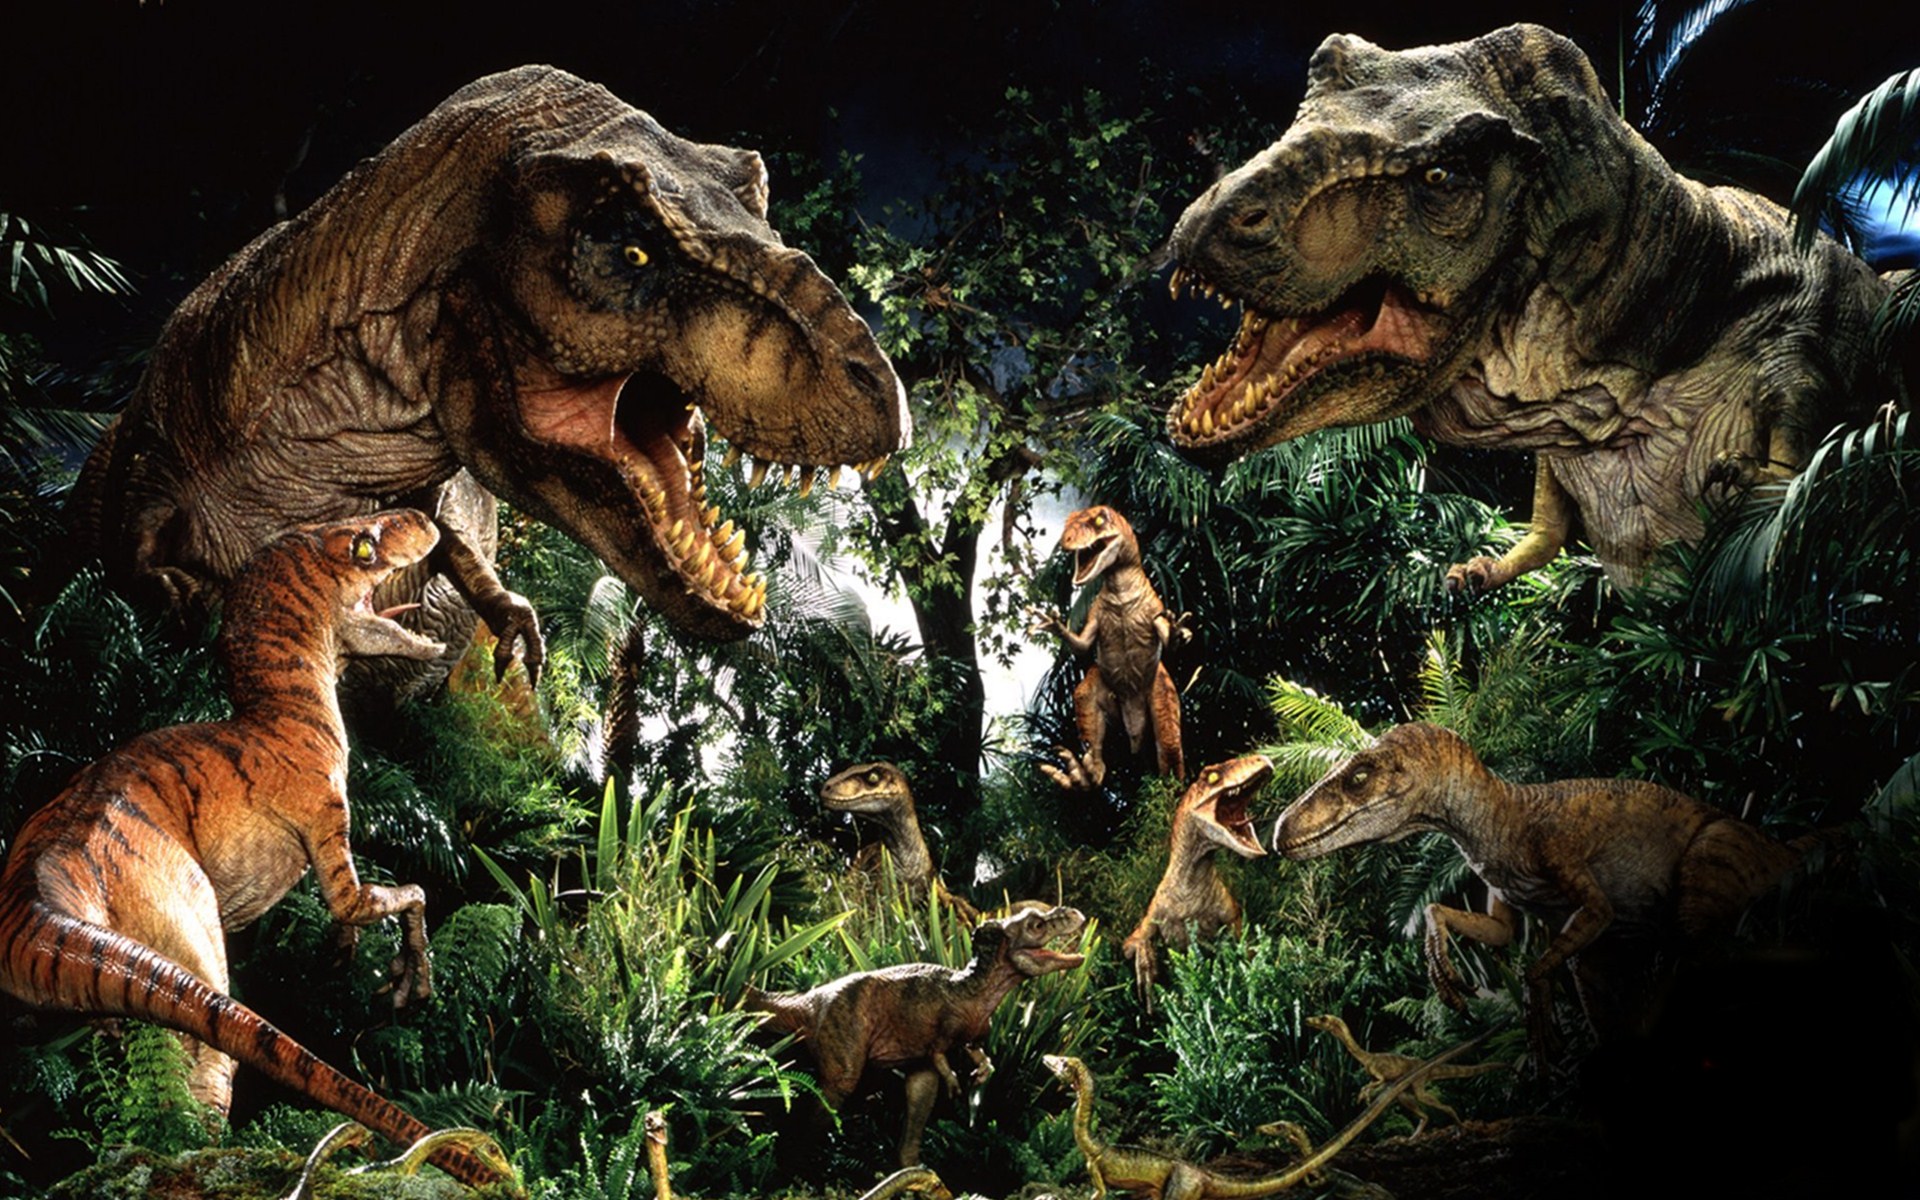 HD wallpaper Jurassic World Fallen Kingdom dinosaur 4K Chris Pratt   Wallpaper Flare